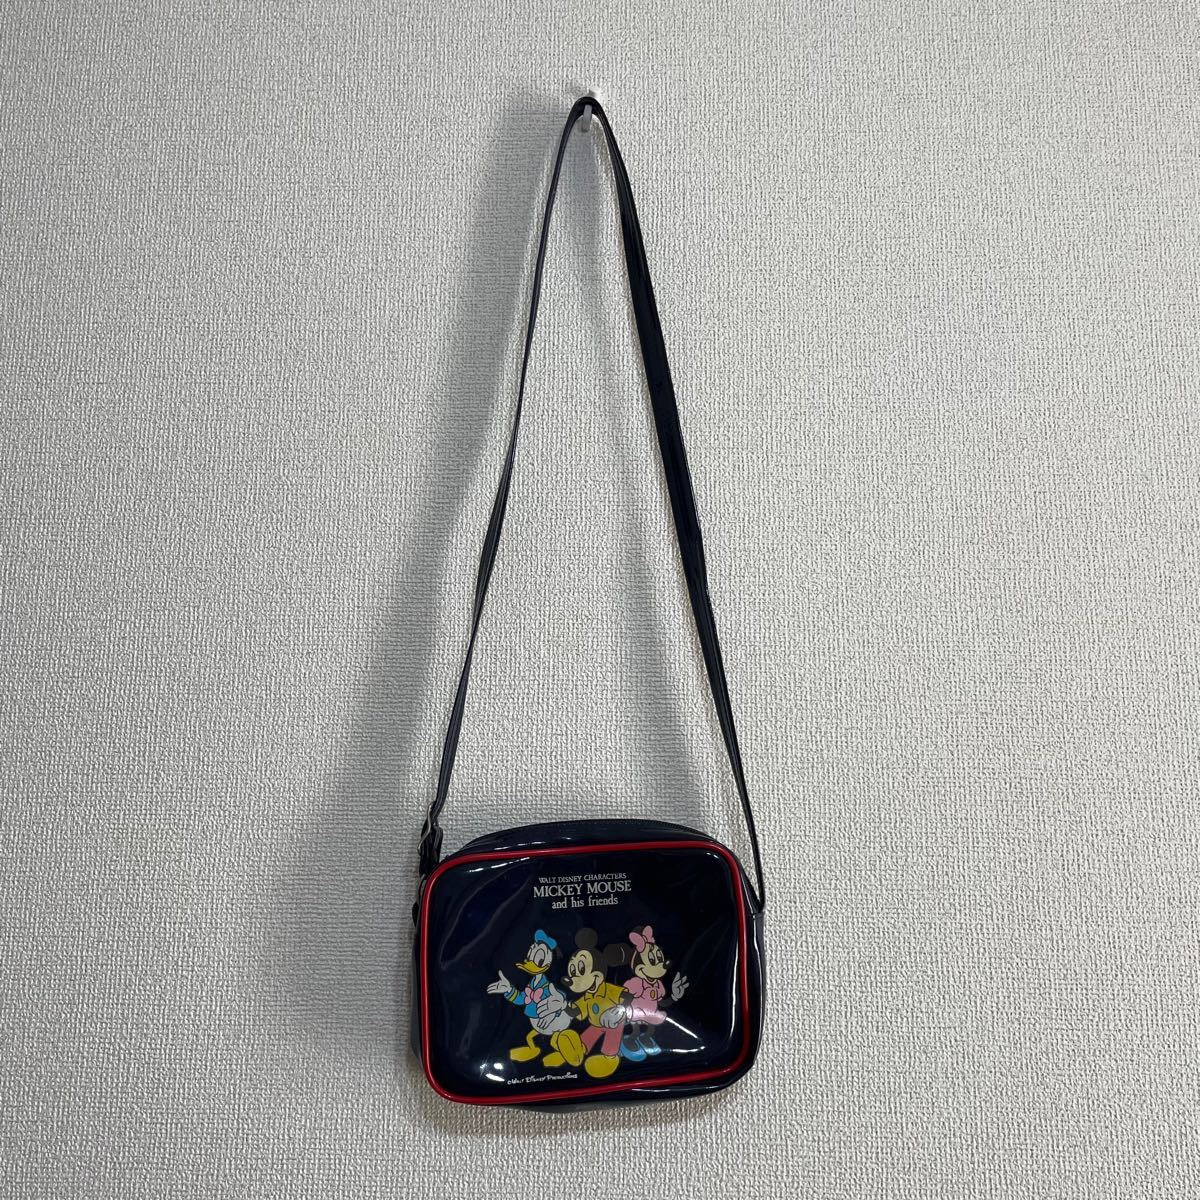 Disney ディズニー ミッキーマウス ポシェト ショルダーバック 昭和レトロ バッグ